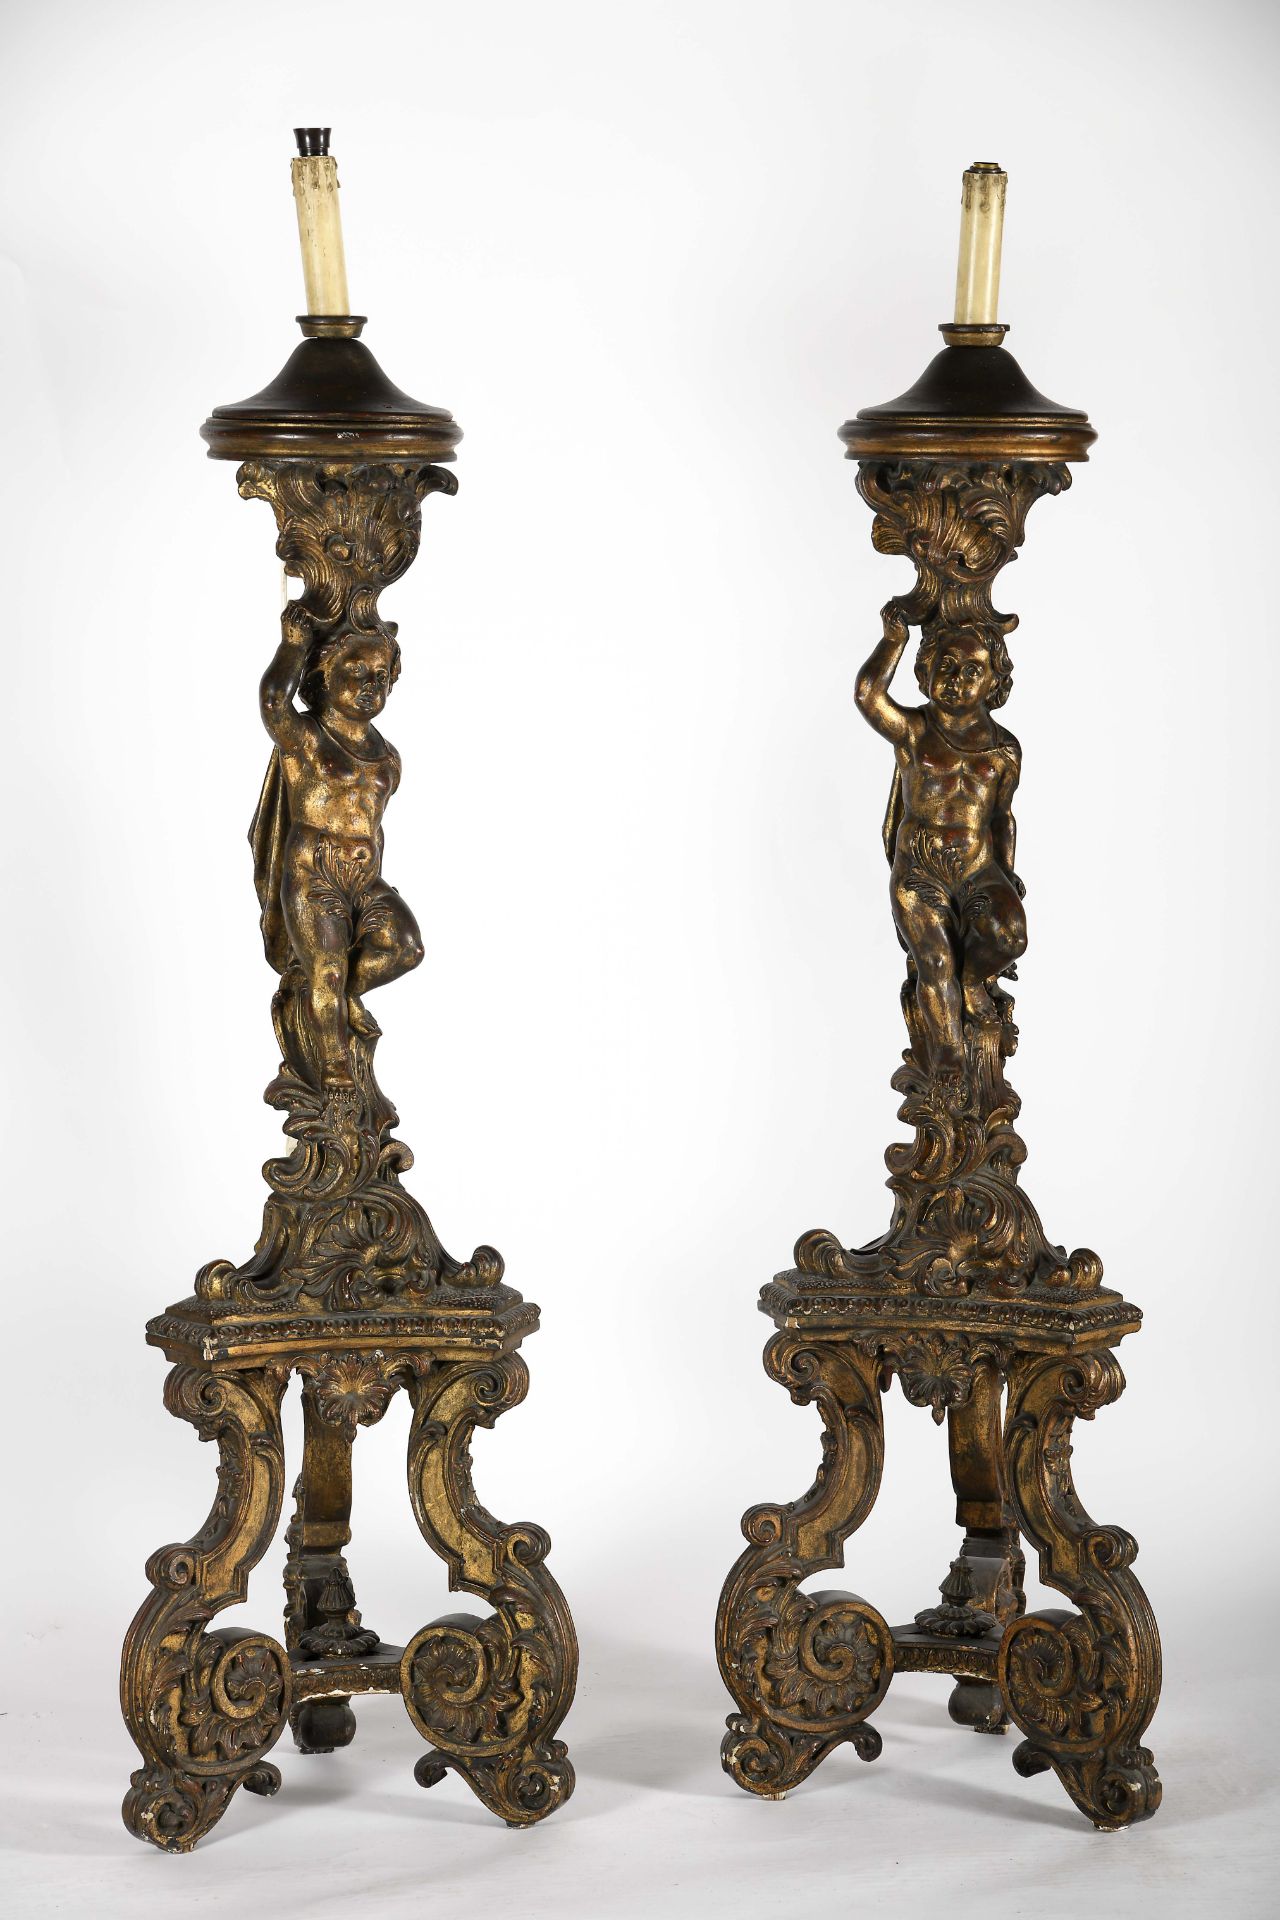 A pair of “Putti” columns